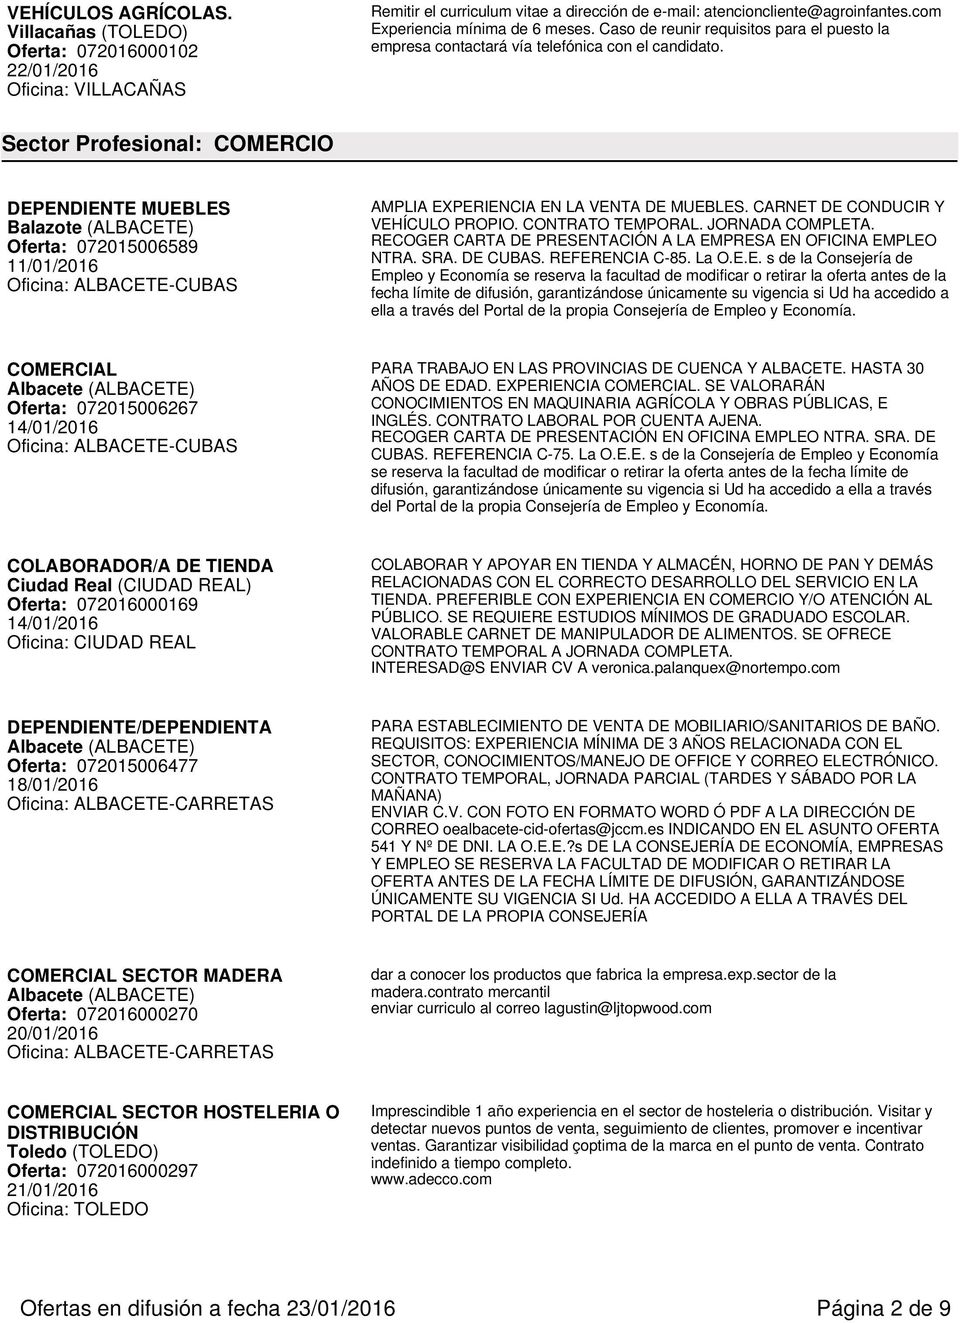 Sector Profesional: COMERCIO DEPENDIENTE MUEBLES Balazote (ALBACETE) Oferta: 072015006589 11/01/2016 AMPLIA EXPERIENCIA EN LA VENTA DE MUEBLES. CARNET DE CONDUCIR Y VEHÍCULO PROPIO. CONTRATO TEMPORAL.